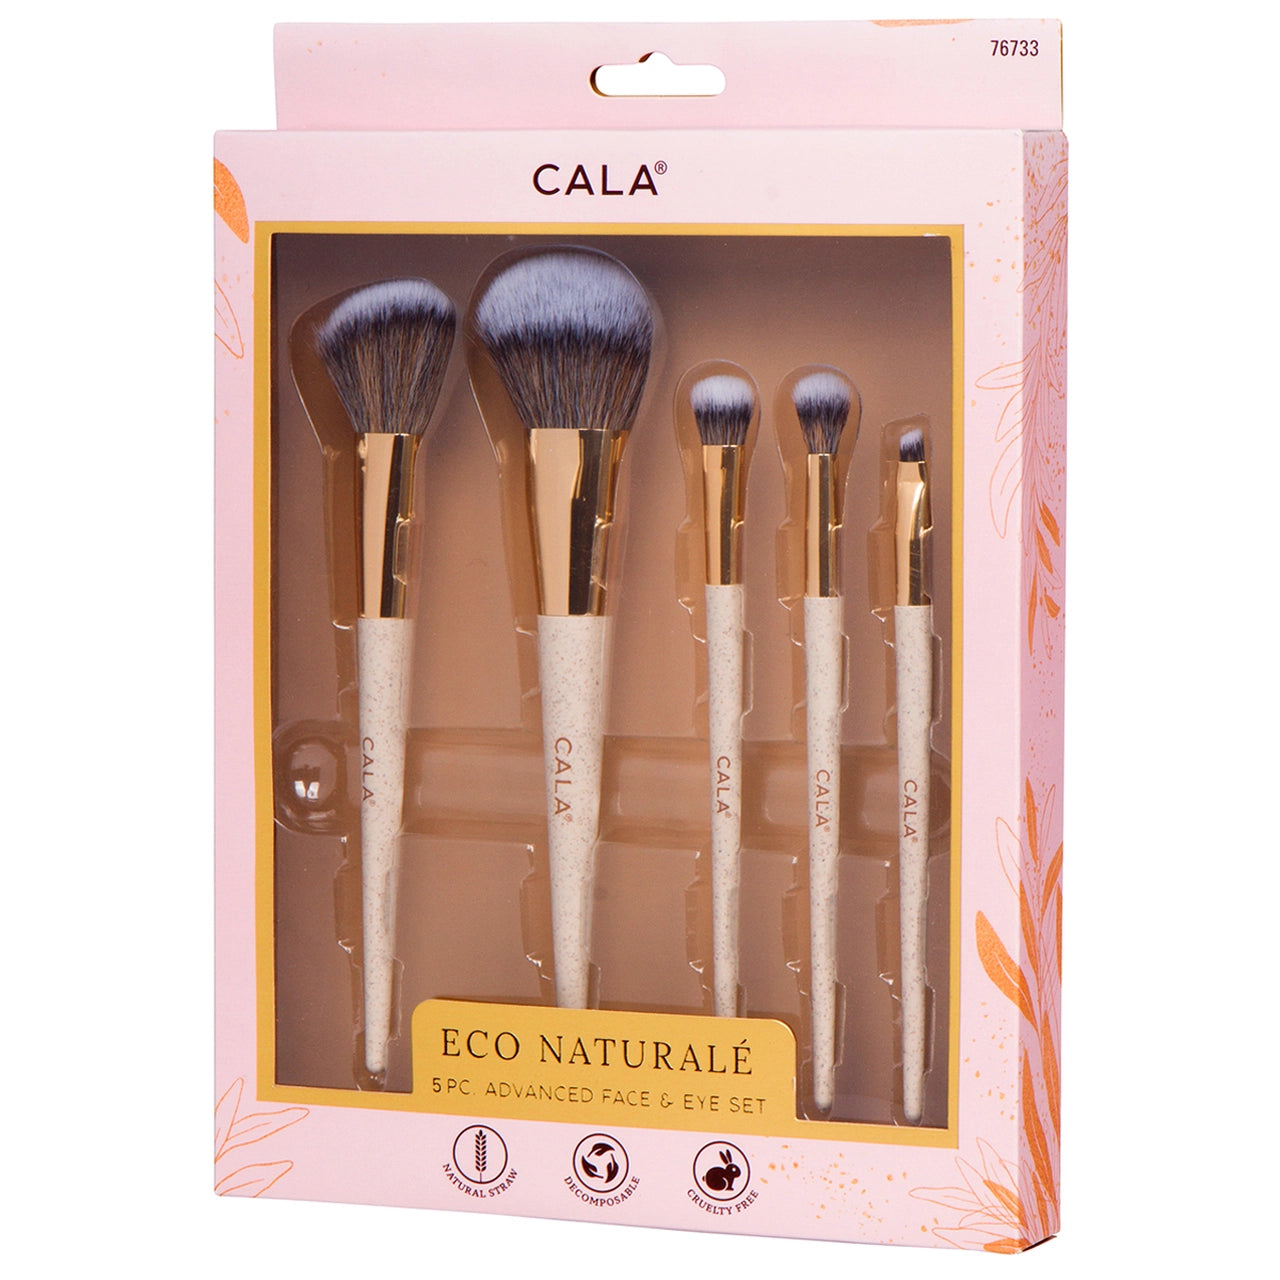 Cala Eco Naturale Face & Eye Makeup Brush Set- 5pc